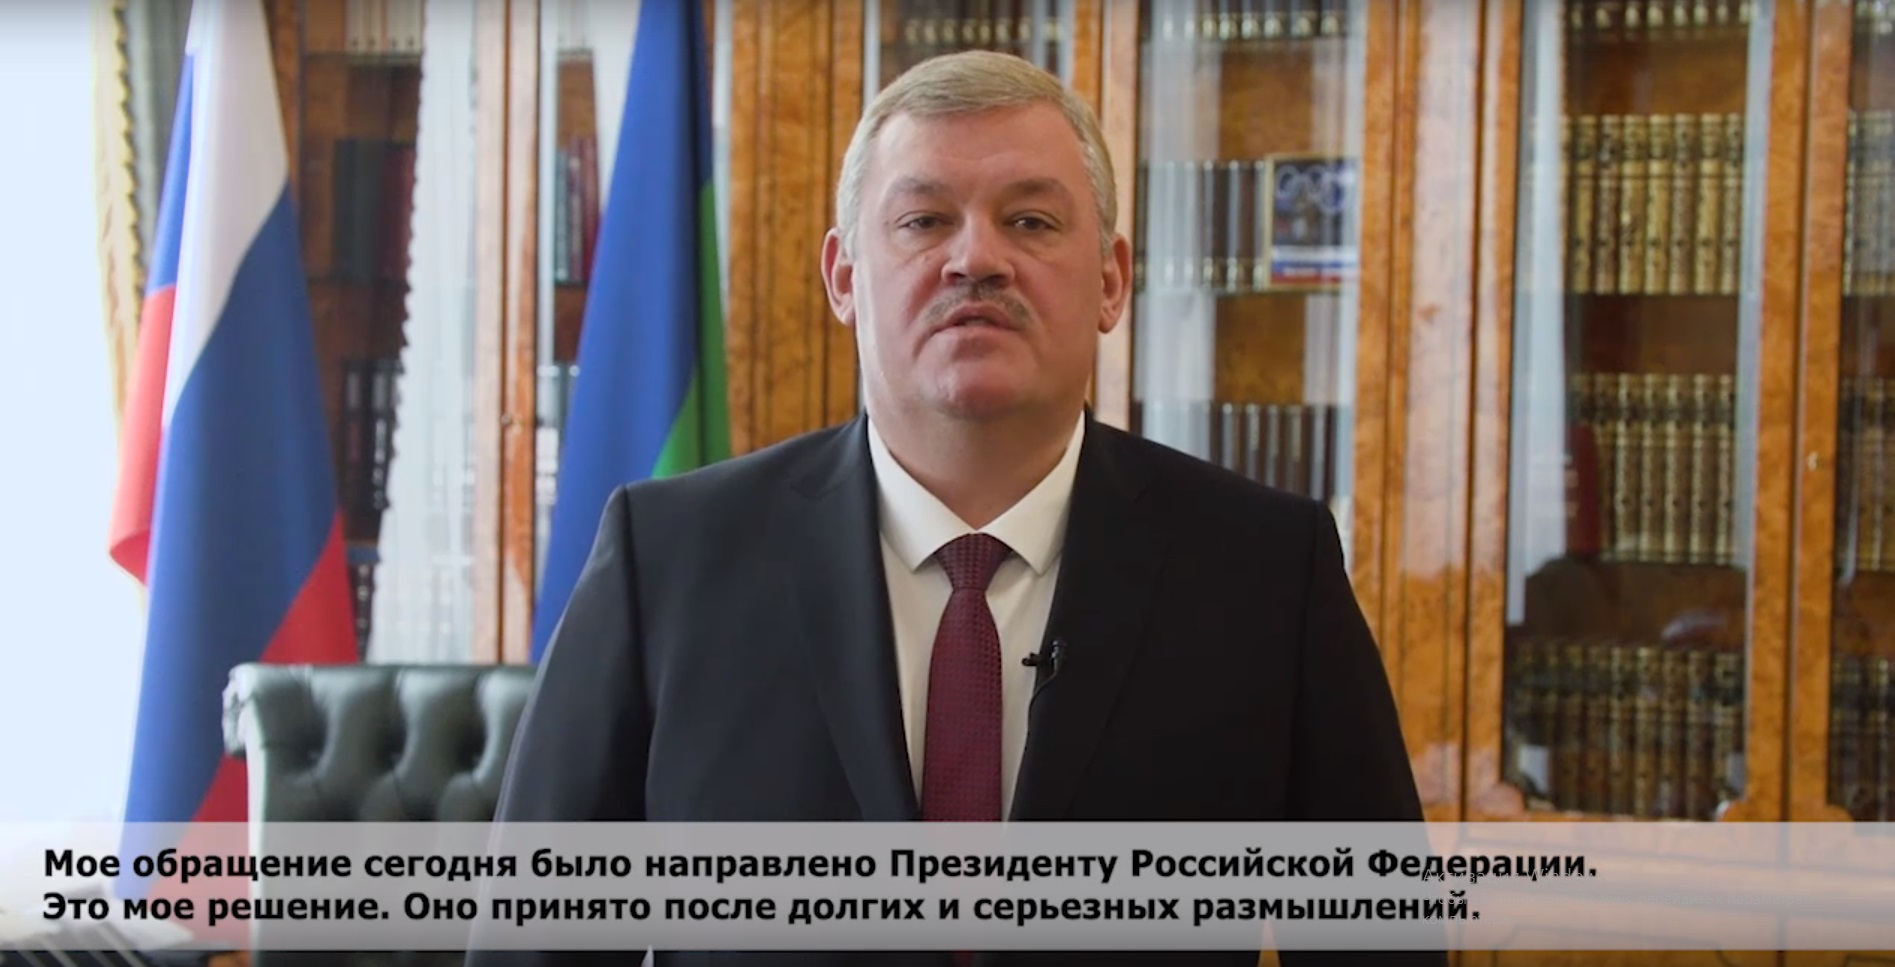 Сергей Гапликов уходит с поста главы Коми